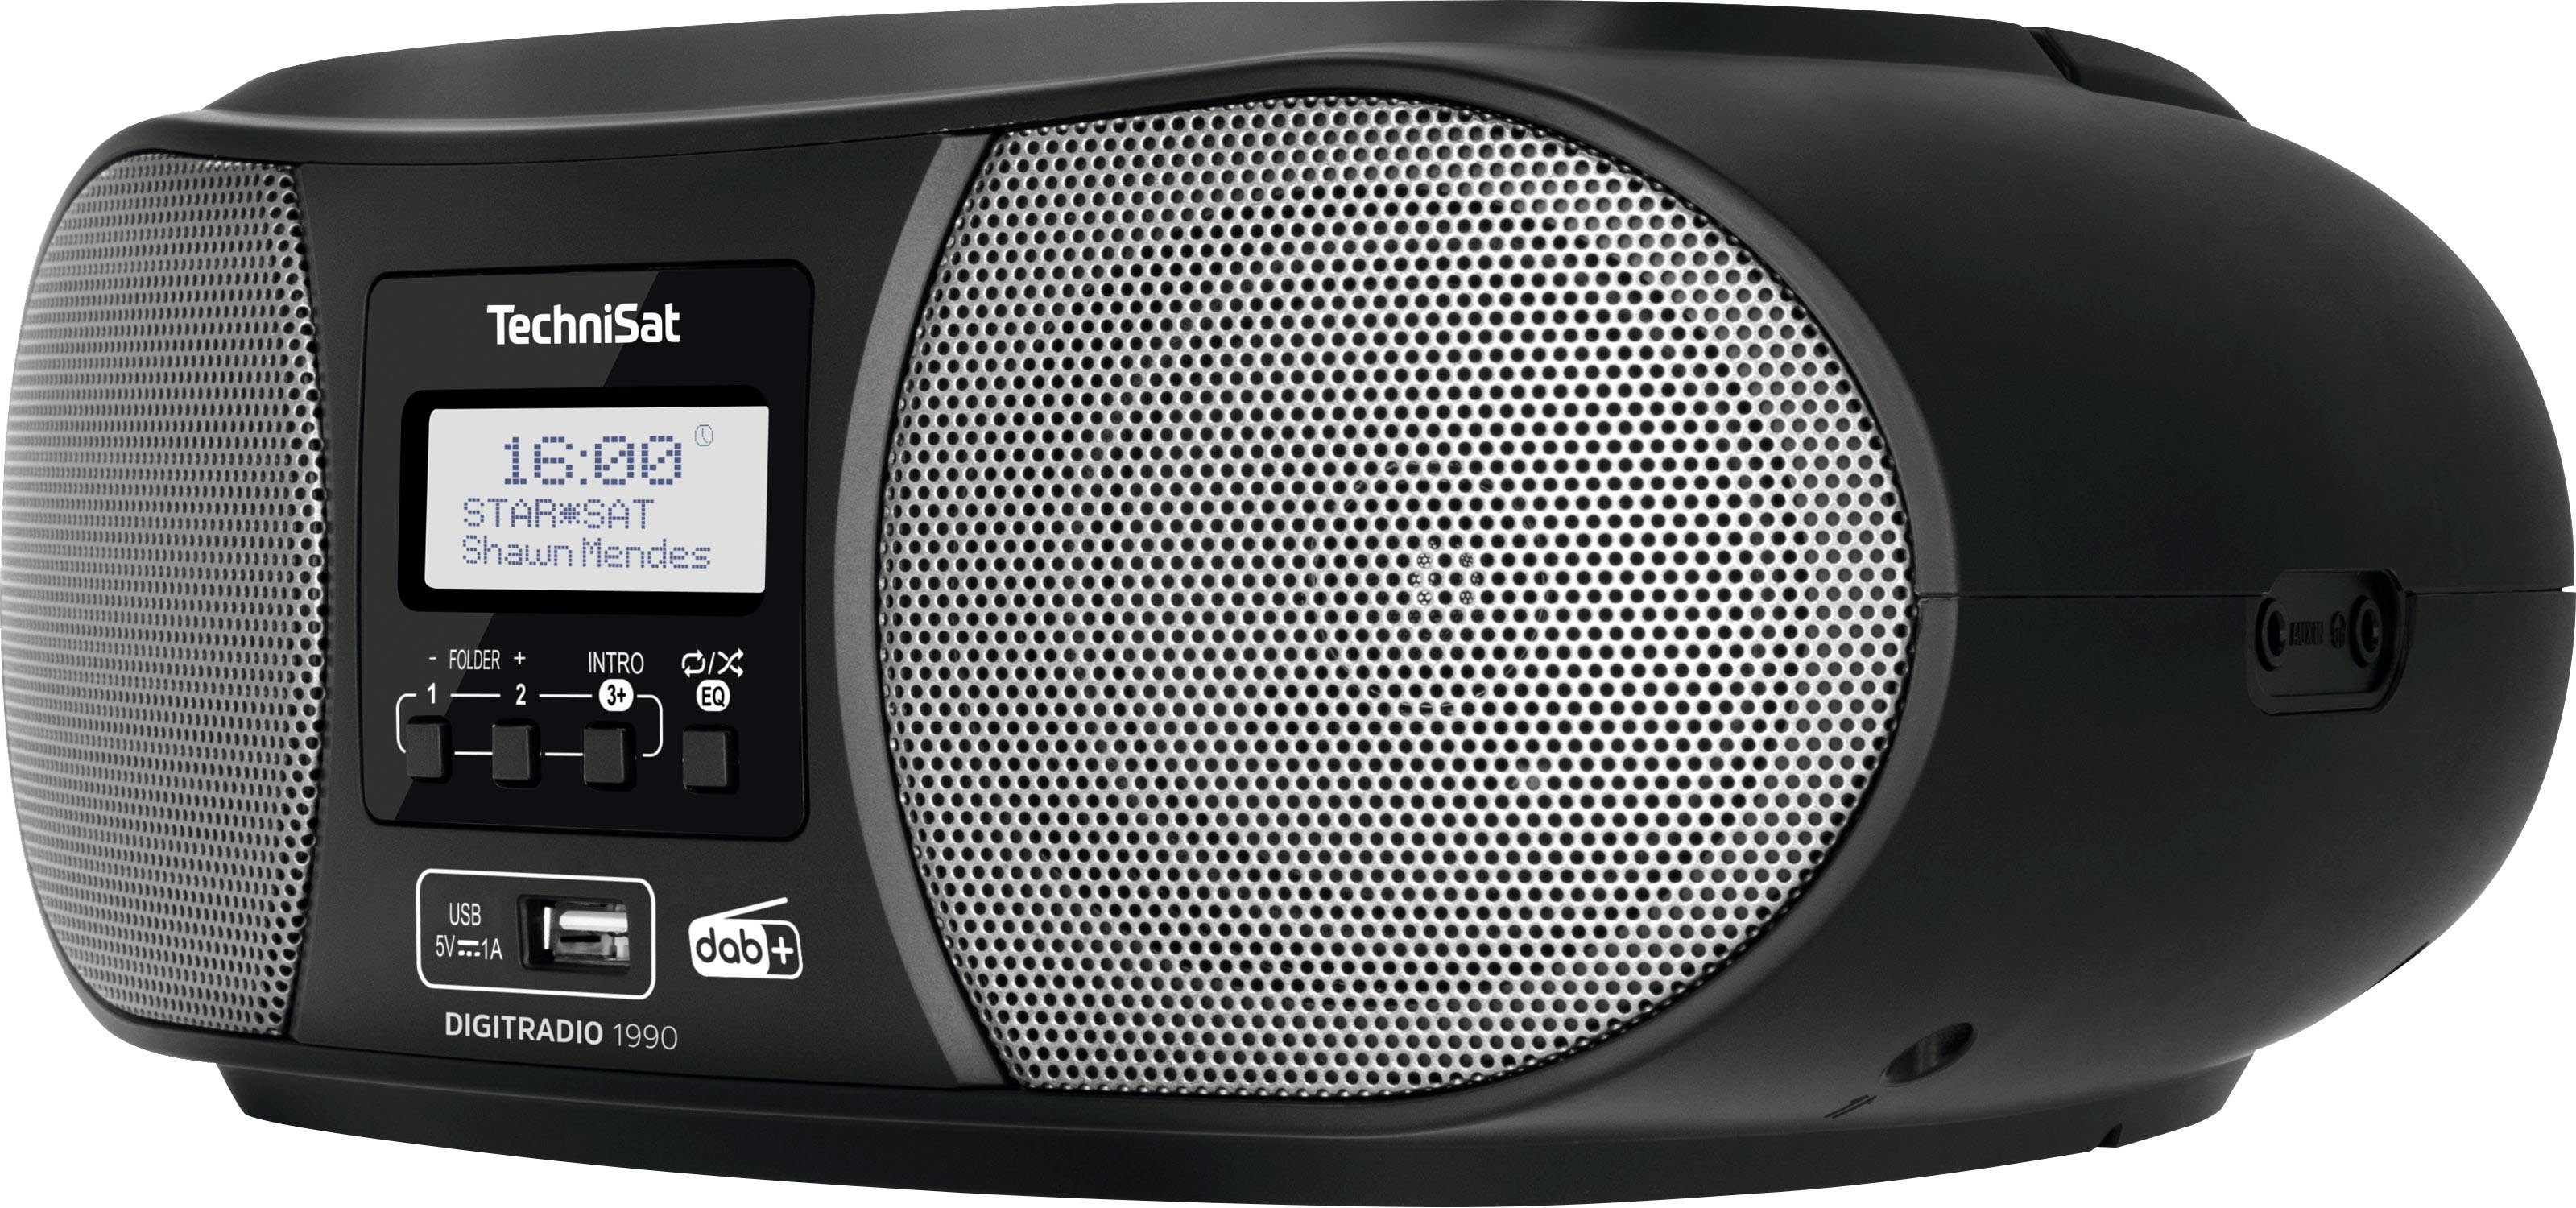 TechniSat mit schwarz (Digitalradio Digitradio DAB+, CD-Player, USB, Boombox Bluetooth, Stereo- 1990 UKW, (DAB), FM-Tuner, Batteriebetrieb möglich)